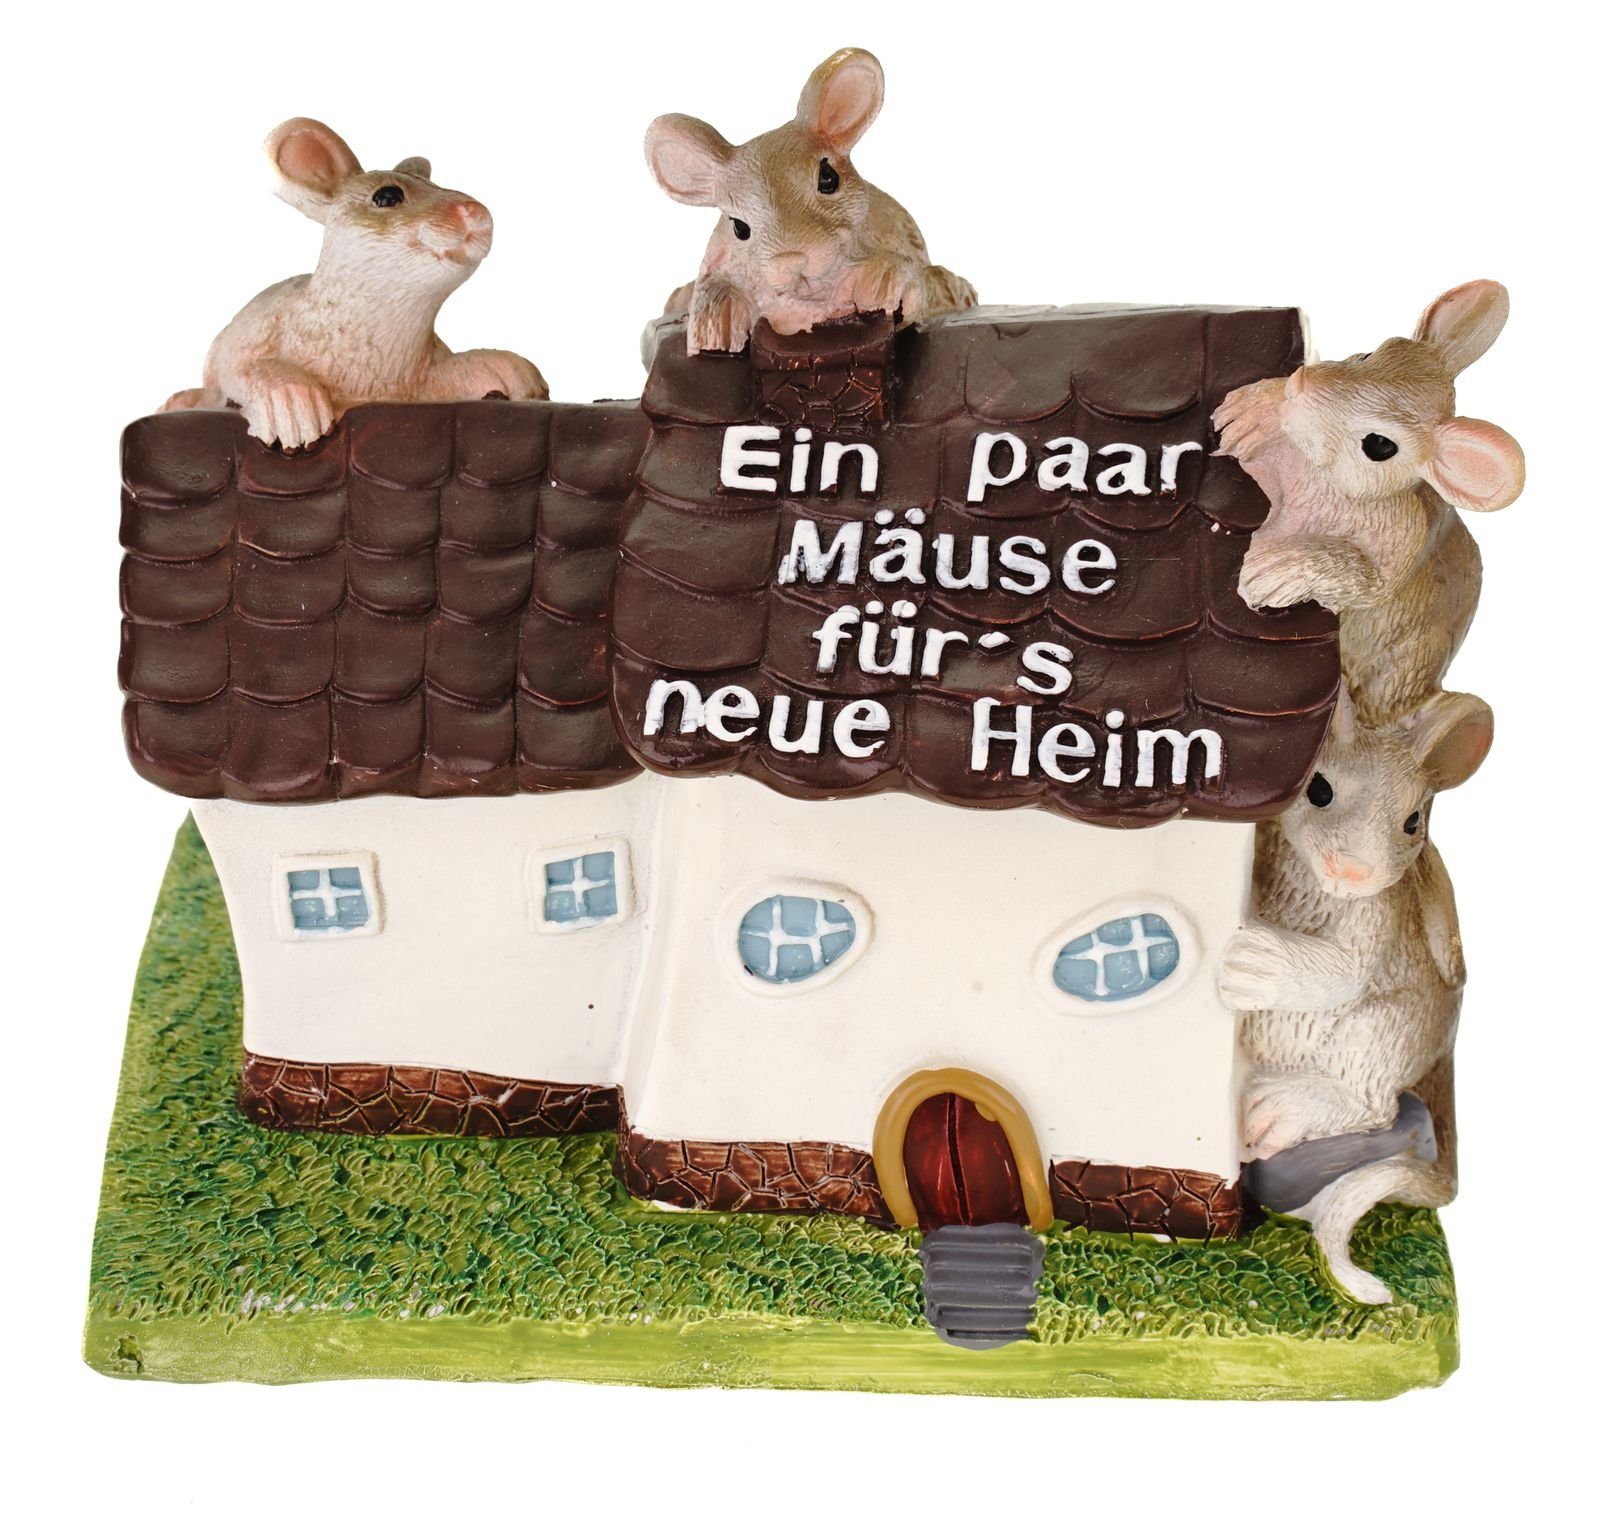 Kremers Schatzkiste Spardose Kremers Schatzkiste Haus Spardose Für's neue  Heim mit Mäusen Wohnung Sparkasse Sparschwein